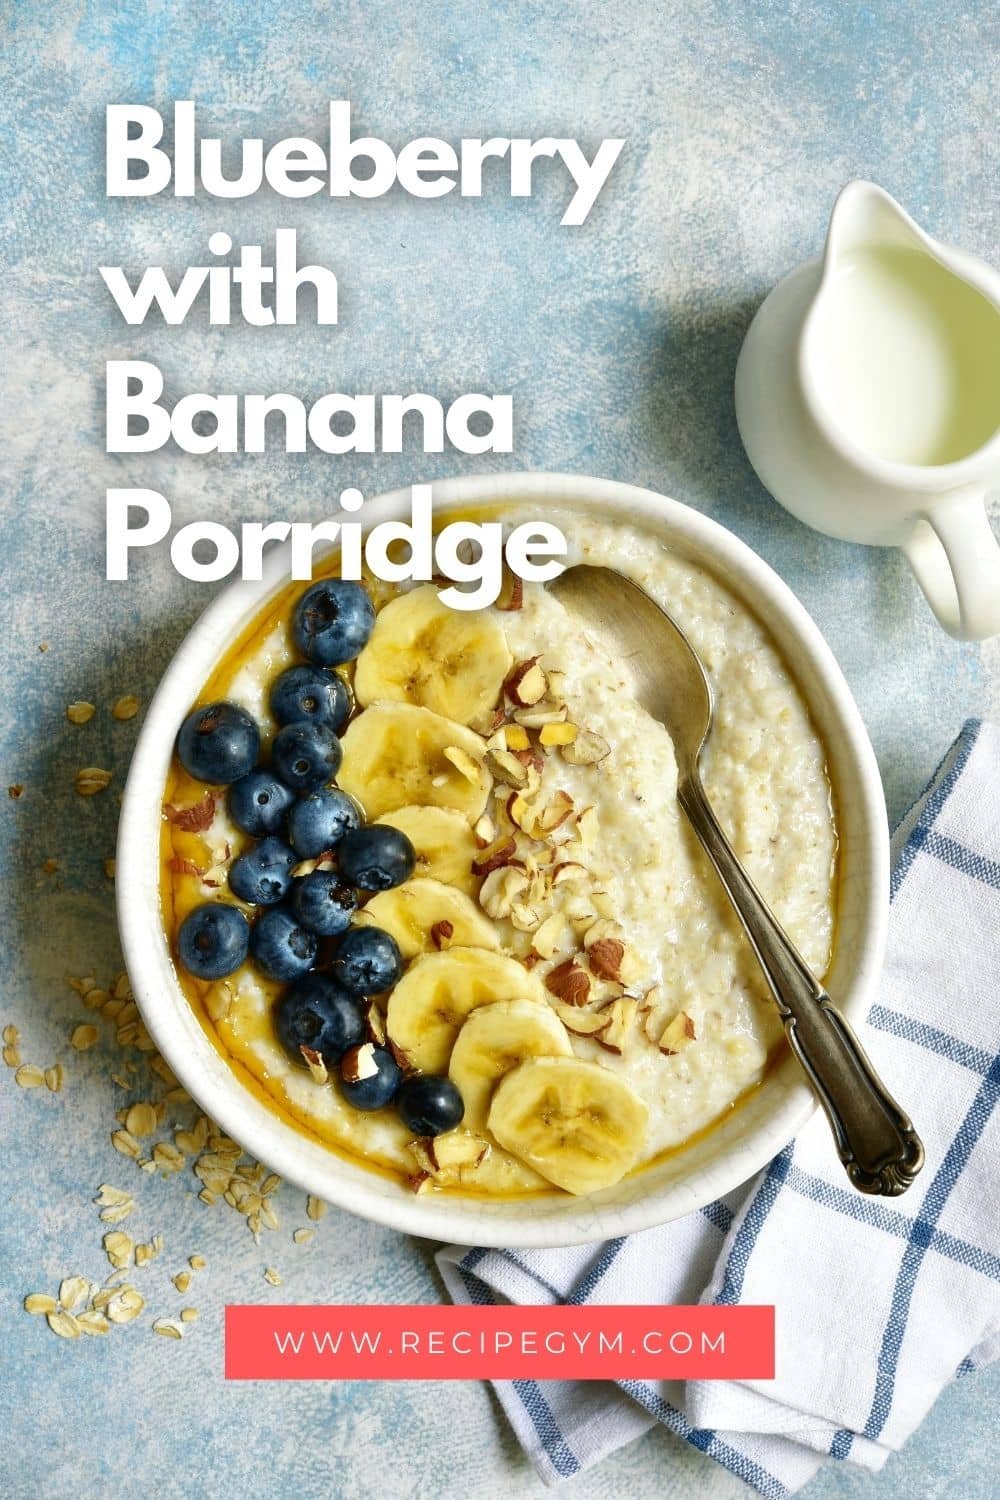 Blueberry with banana porridge